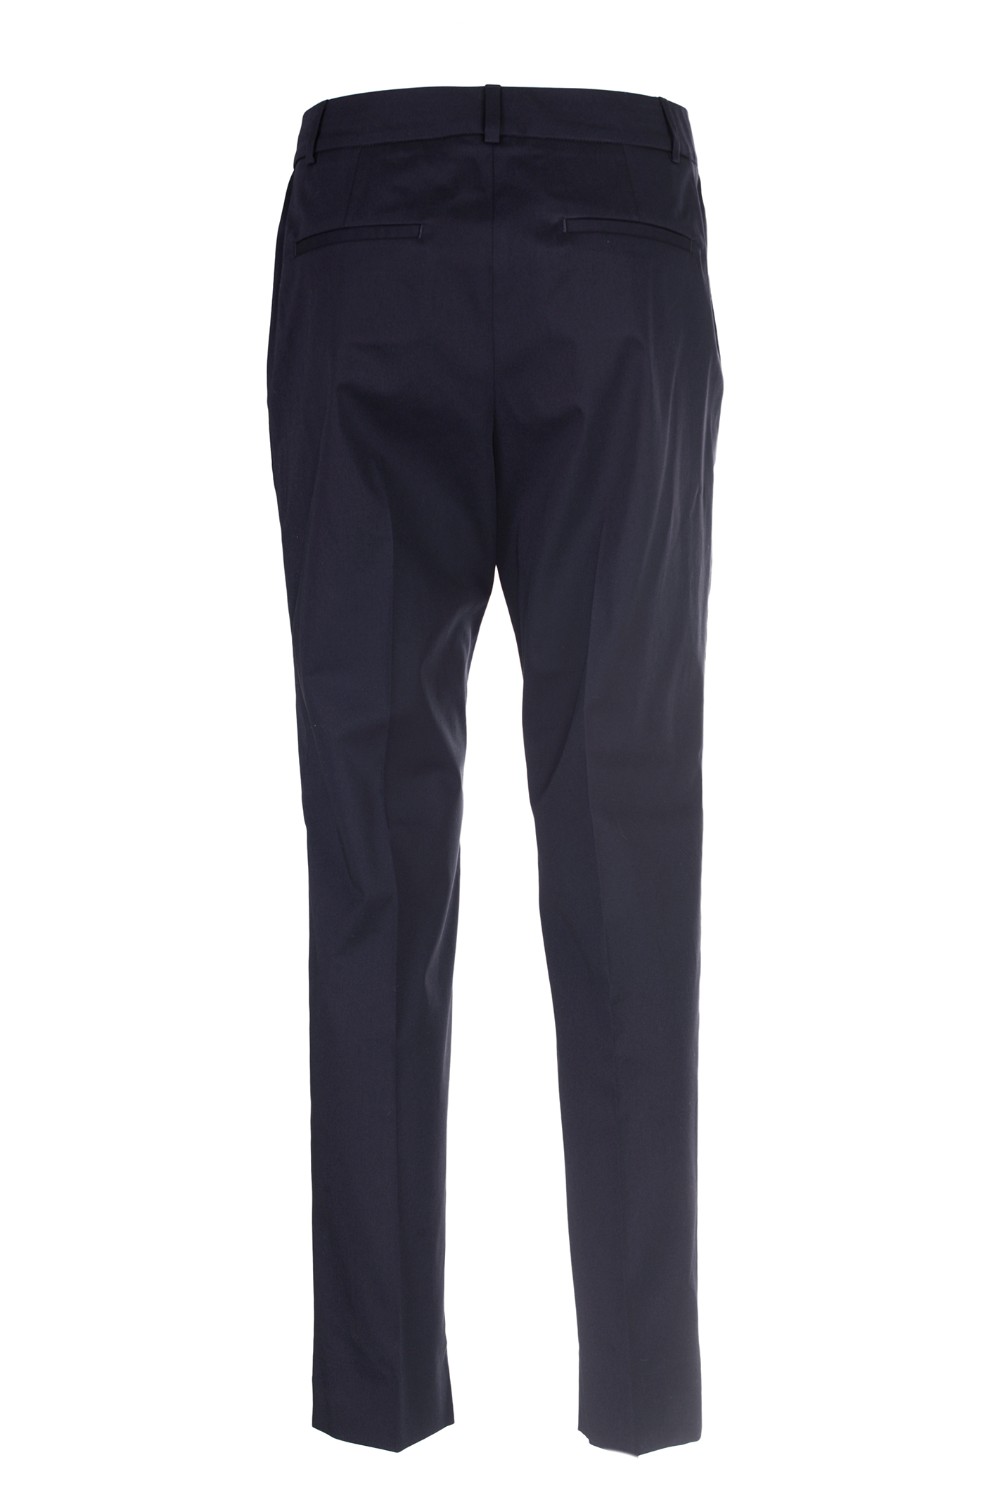 shop PESERICO Sales Pantalone: Peserico pantalone in cotone elasticizzato.
Tasche laterali e posteriori.
Composizione: 97% cotone 3% elastan.
Fabbricato in Italia.. P04707 01037-161 number 192815